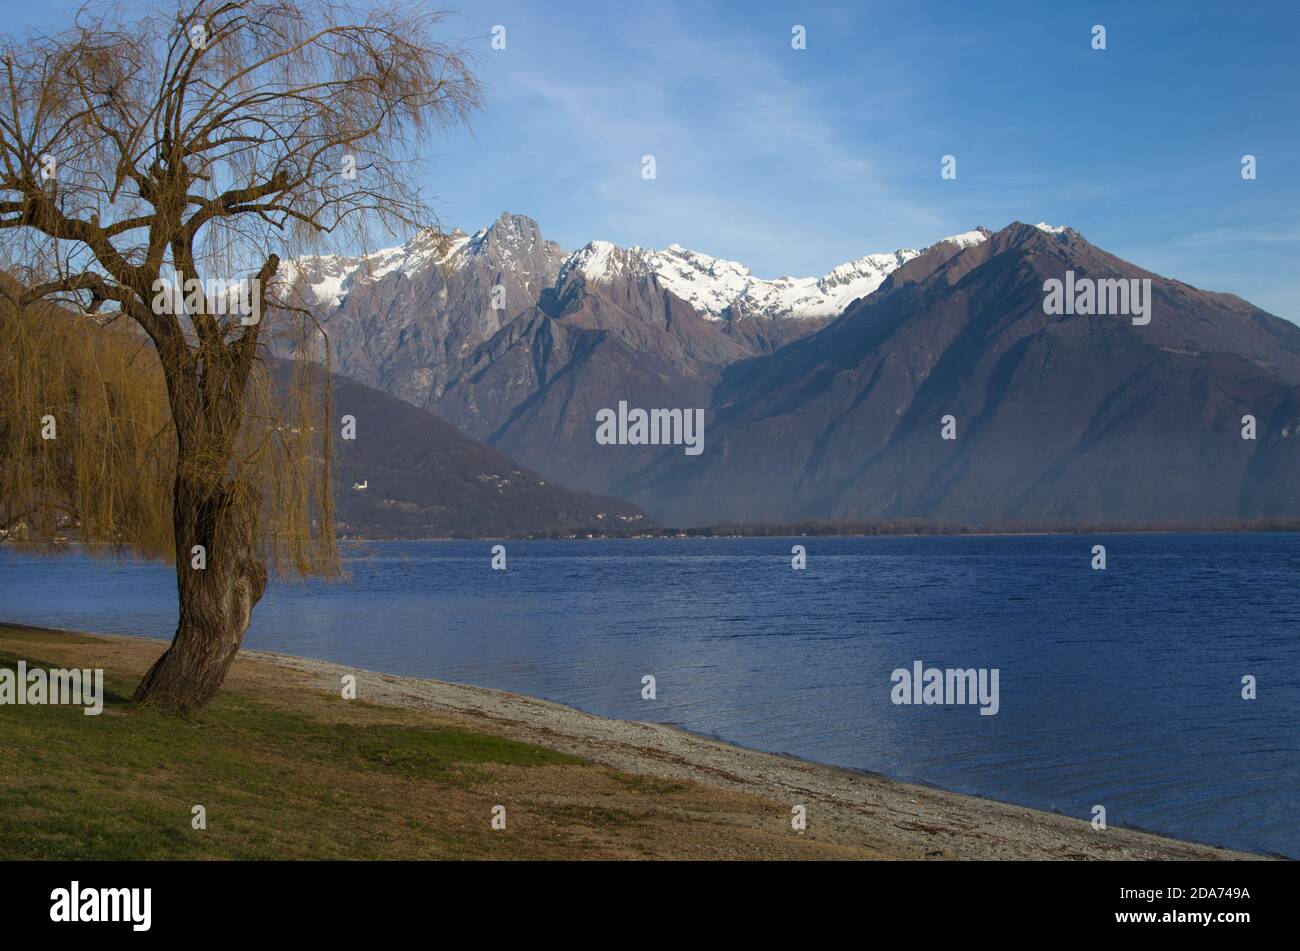 Paysage magnifique avec des montagnes enneigées qui encadrent le lac de lake..Como, Lombardie, les lacs italiens, Italie Banque D'Images